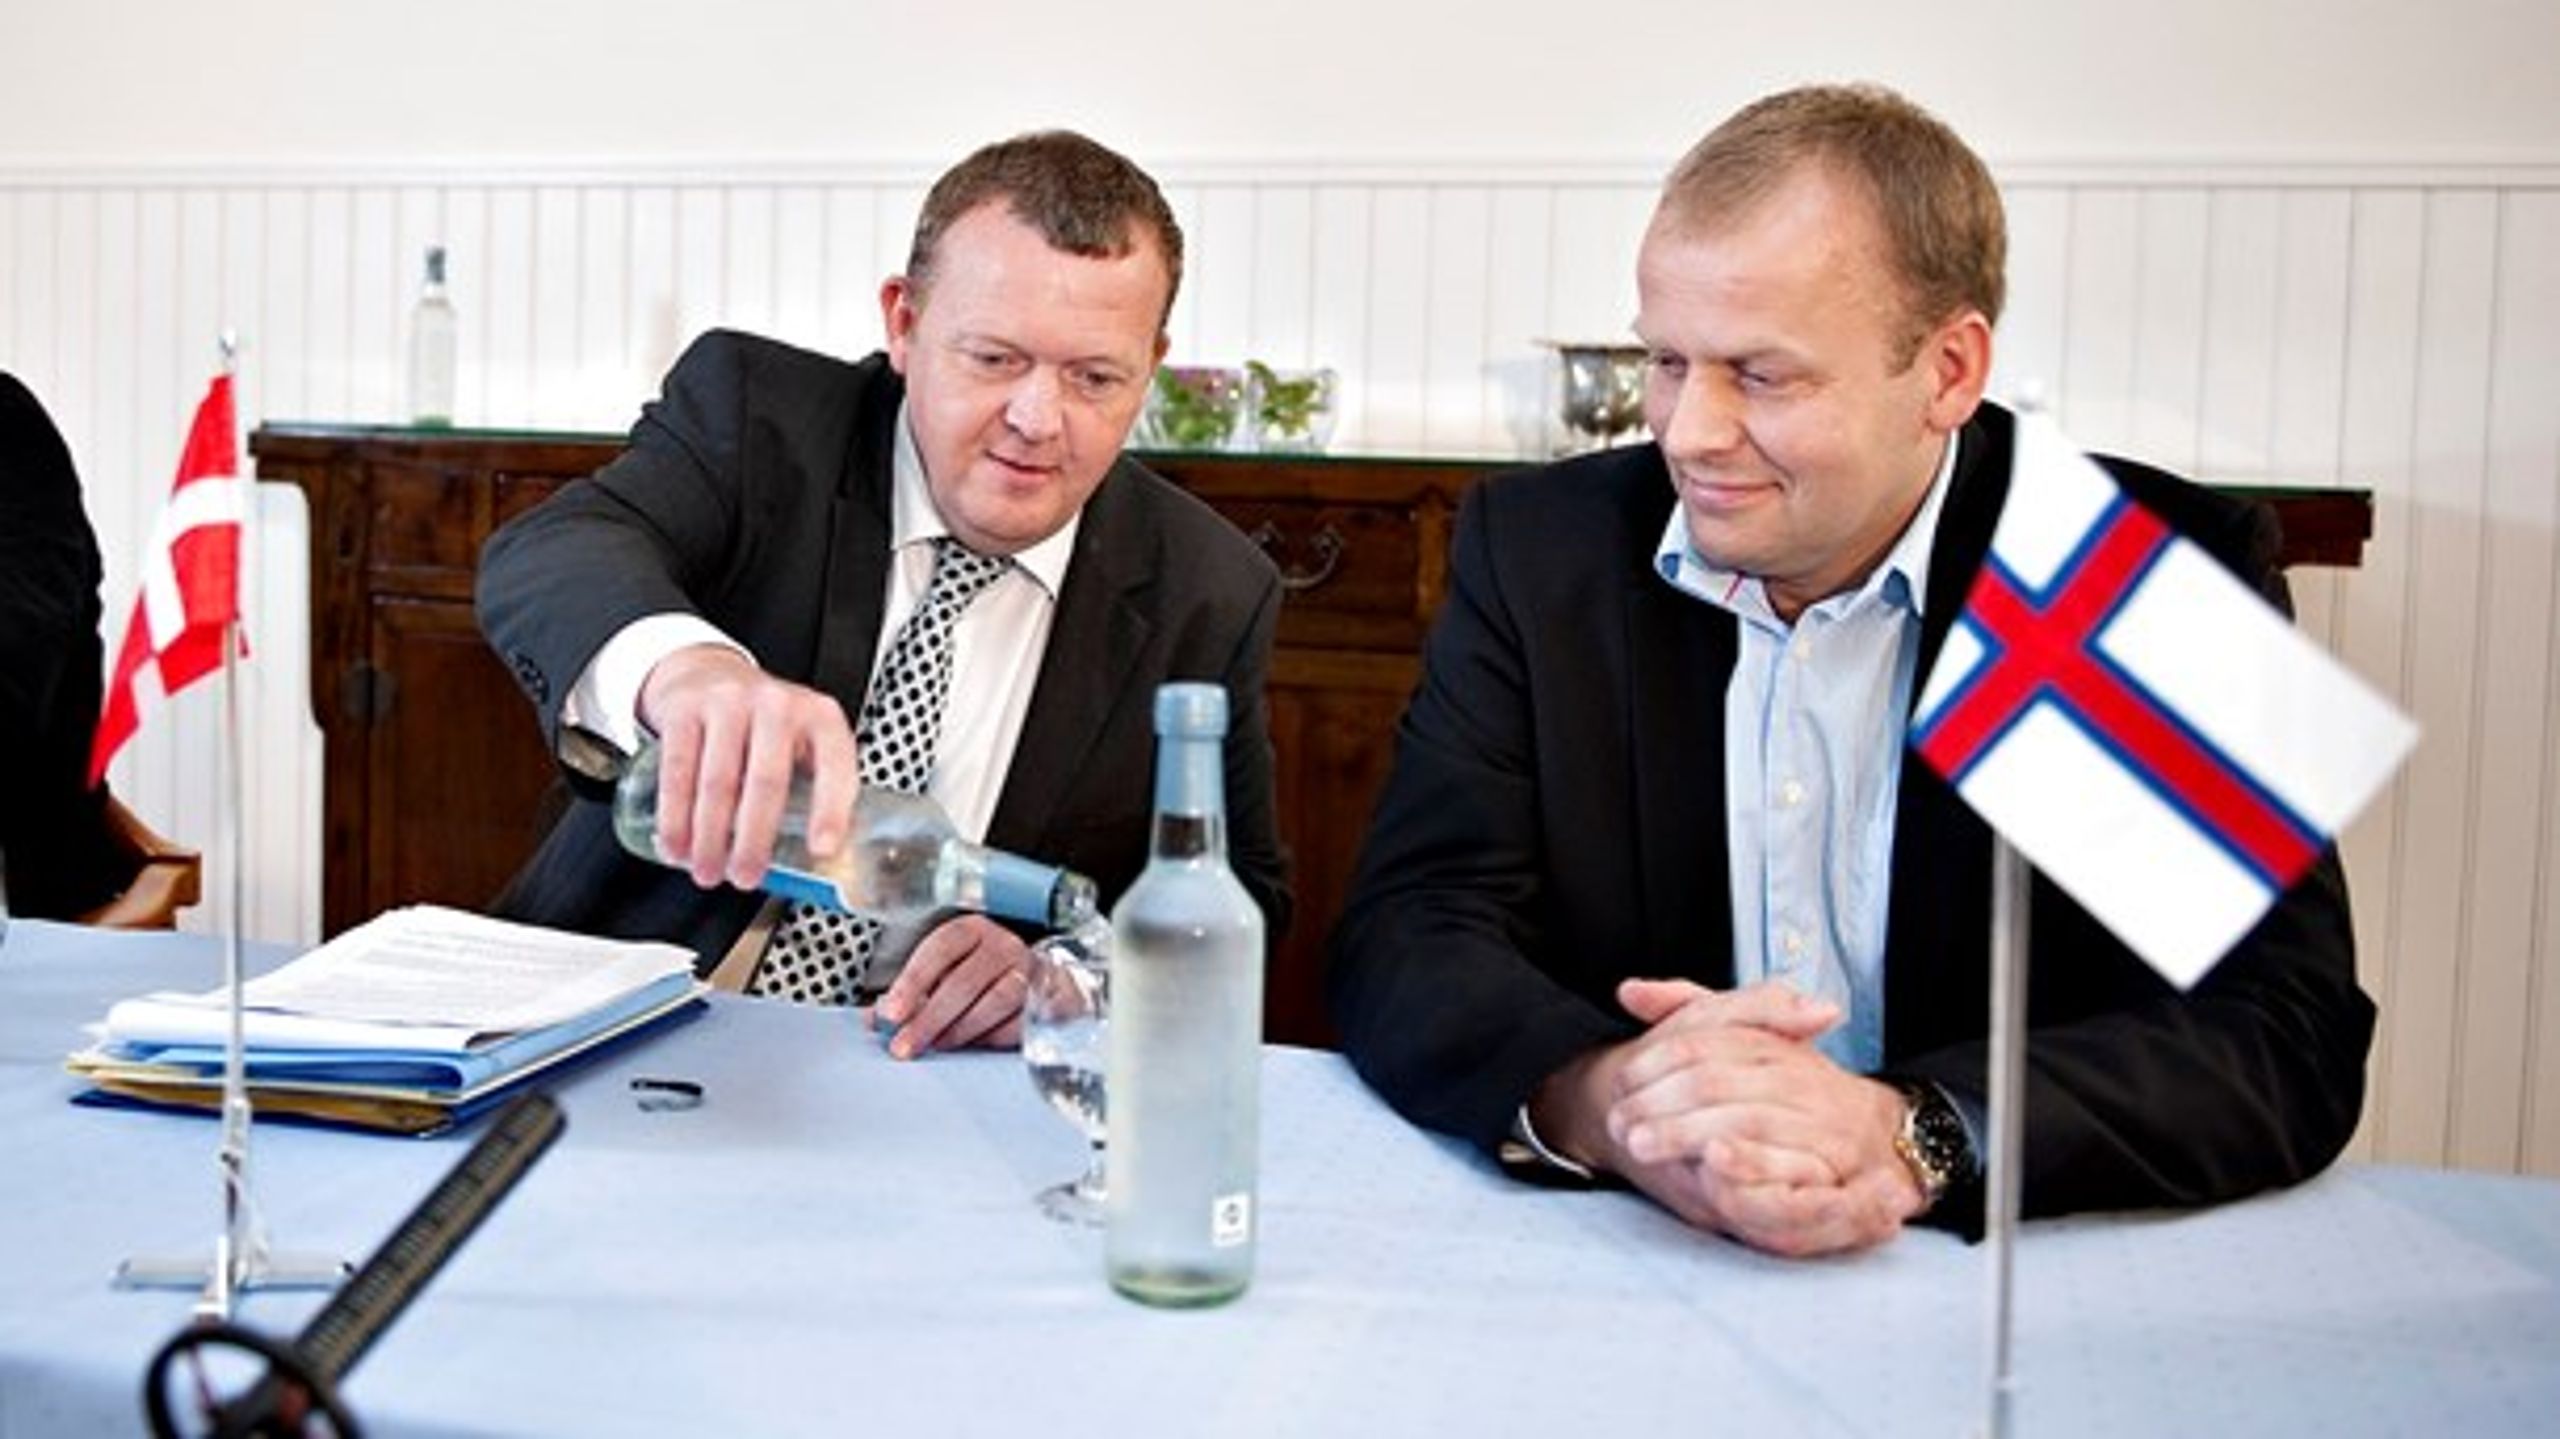 Sambandspartiets spidskandidat, tidligere lagmand Kai Leo Holm Johannesen (t.h.), ses her sammen med Lars Løkke Rasmussen (t.v.) ved et rigsmøde i 2010.